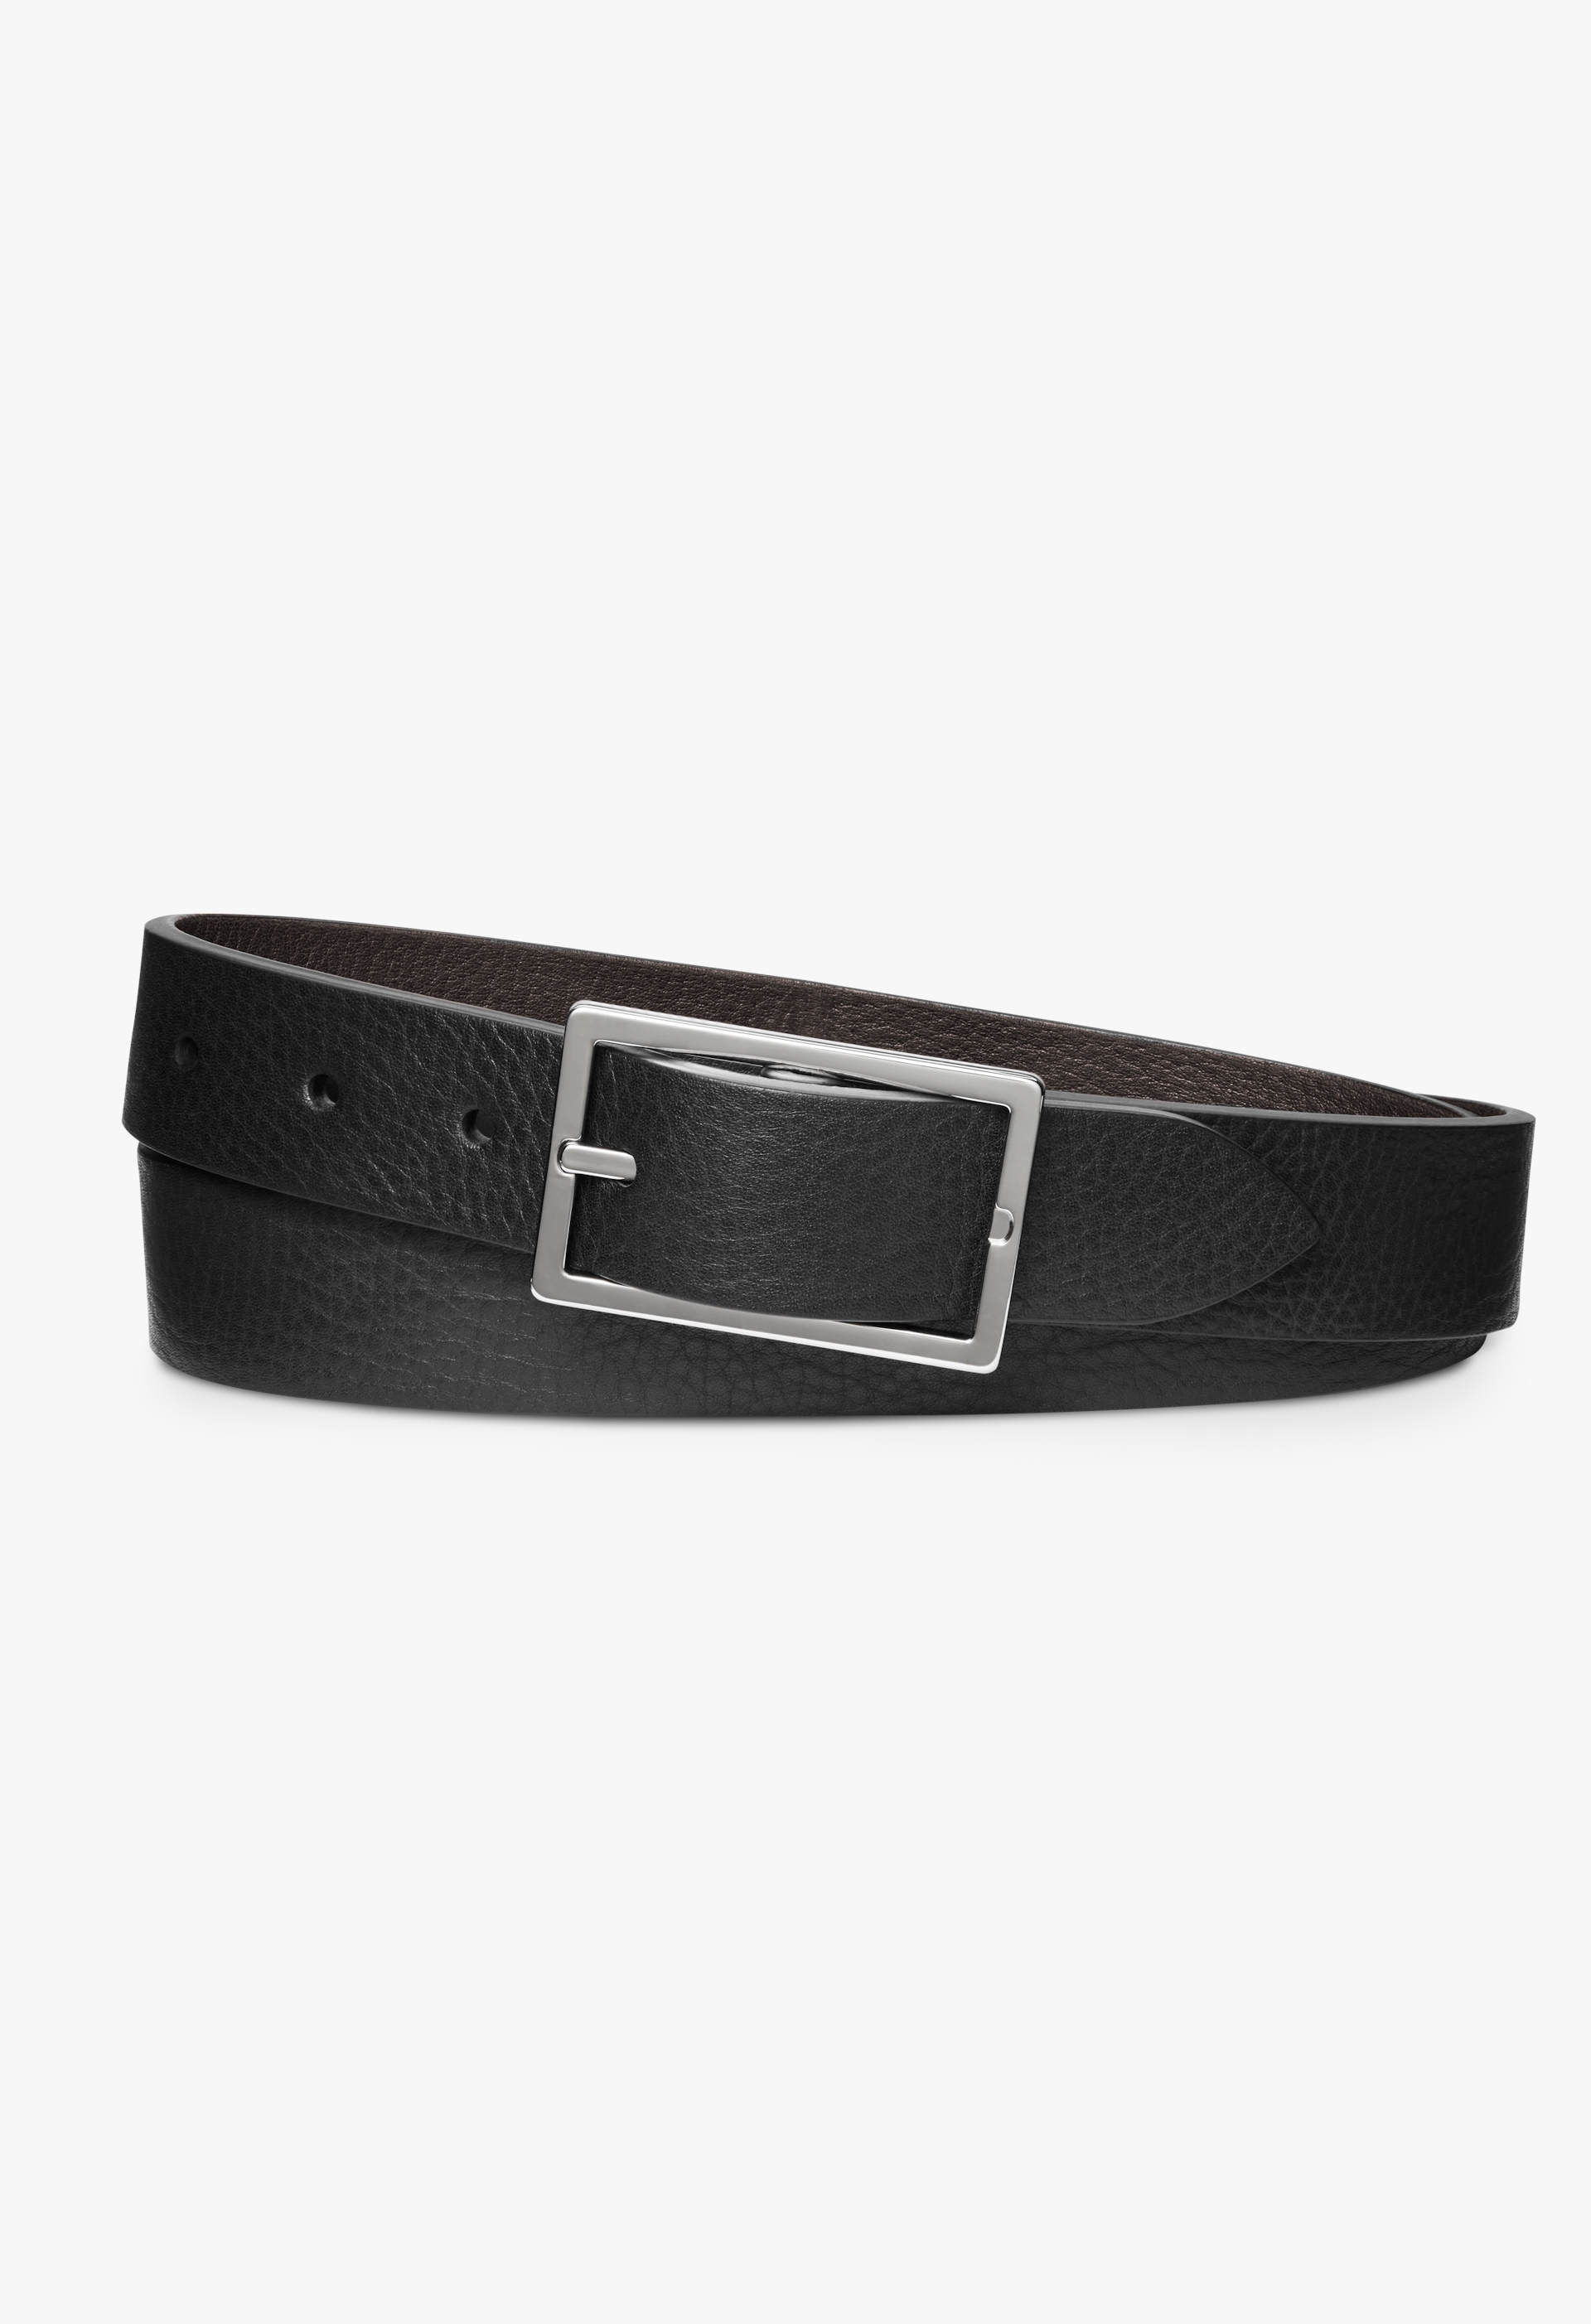 Leather belt, Le 31, Dressy Belts for Men